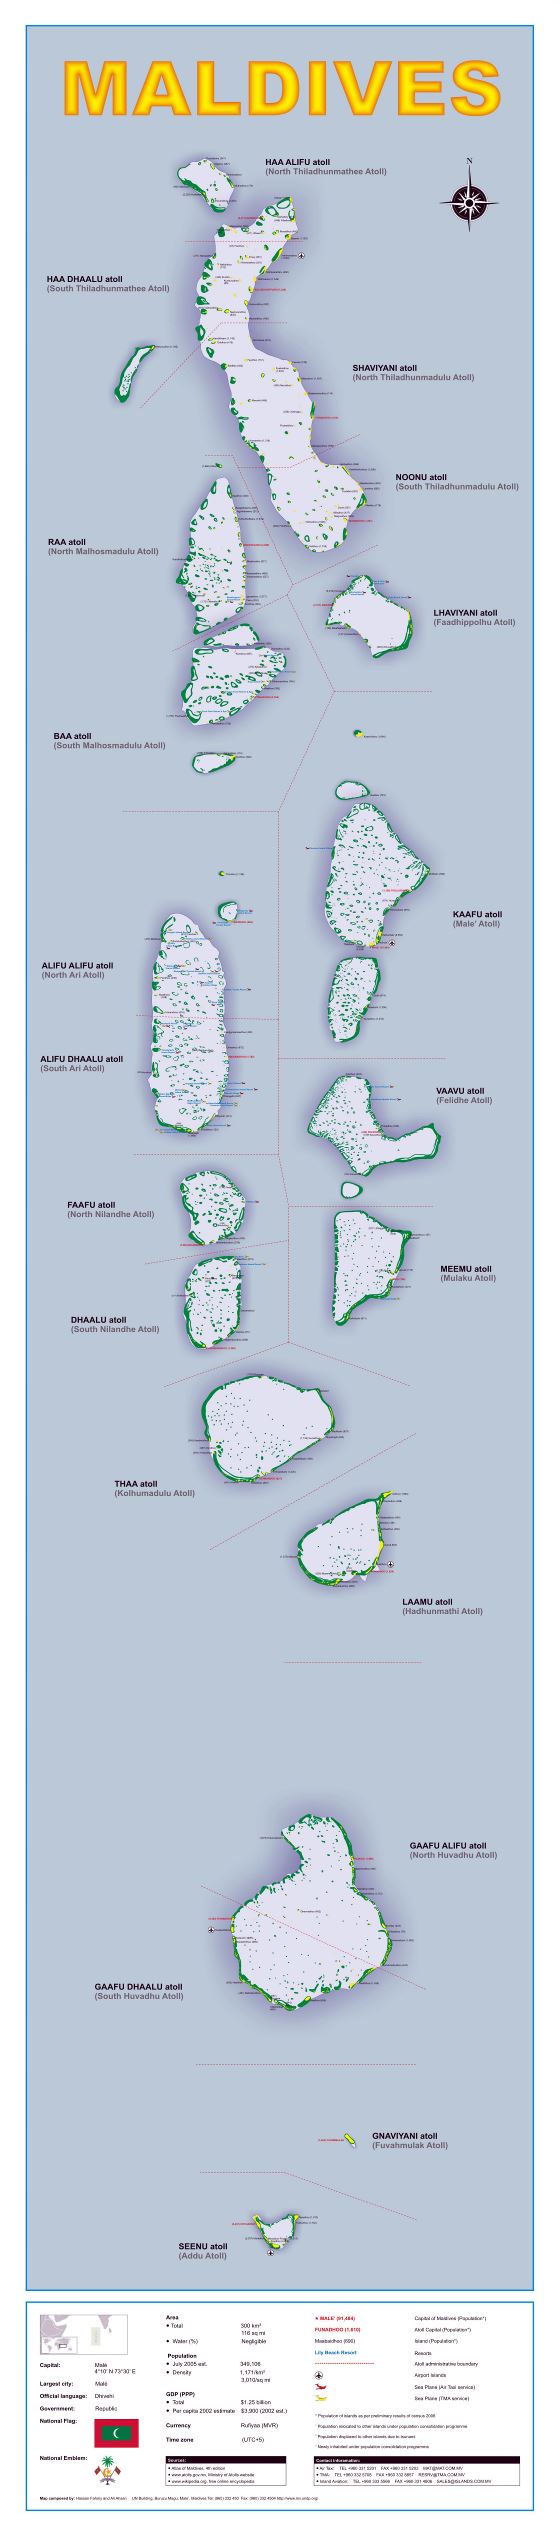 Grande detallado mapa político y administrativo de Maldivas